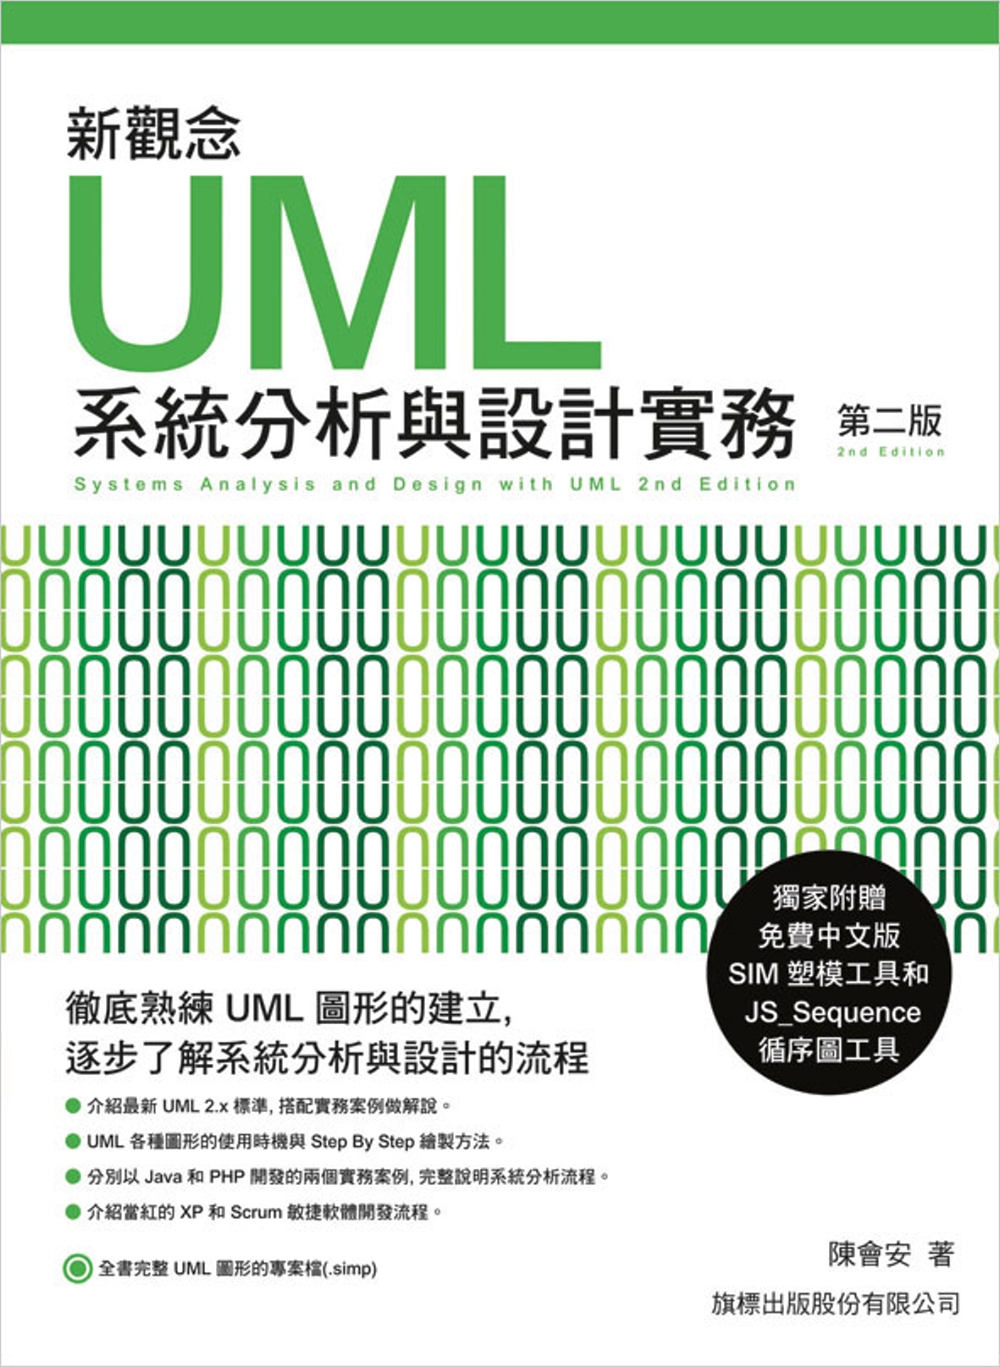 新觀念 UML 系統分析與設計實務 第二版